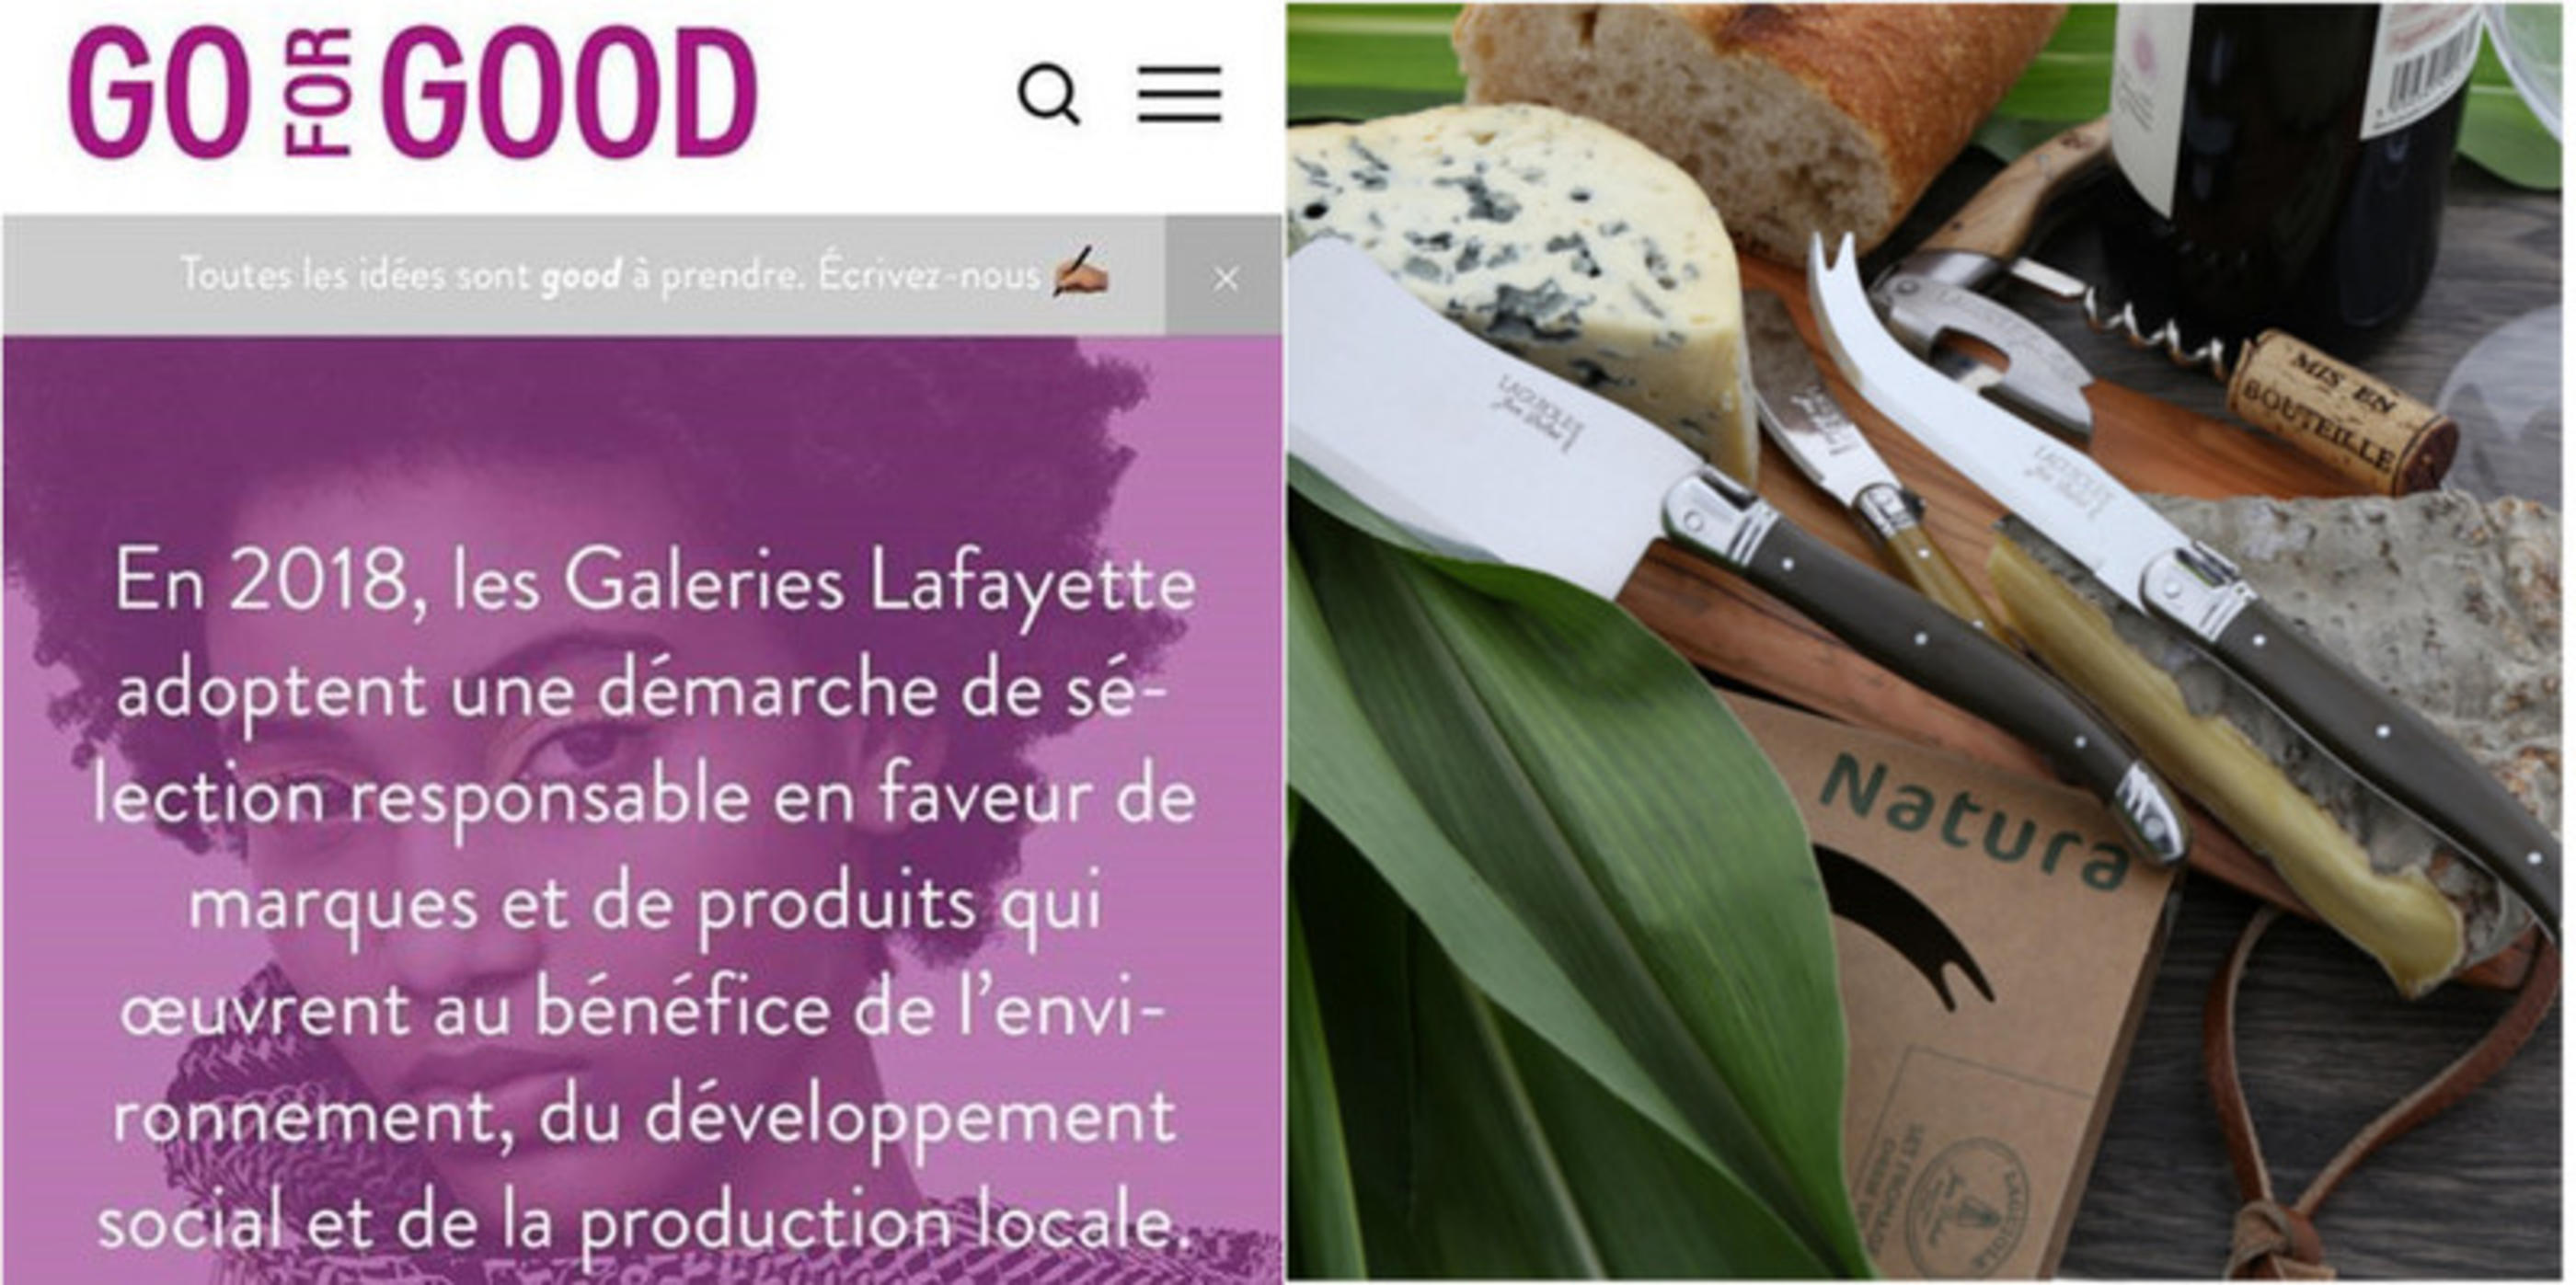 Les couteaux Jean Dubost sélectionnés aux Go for Good des Galeries Lafayette